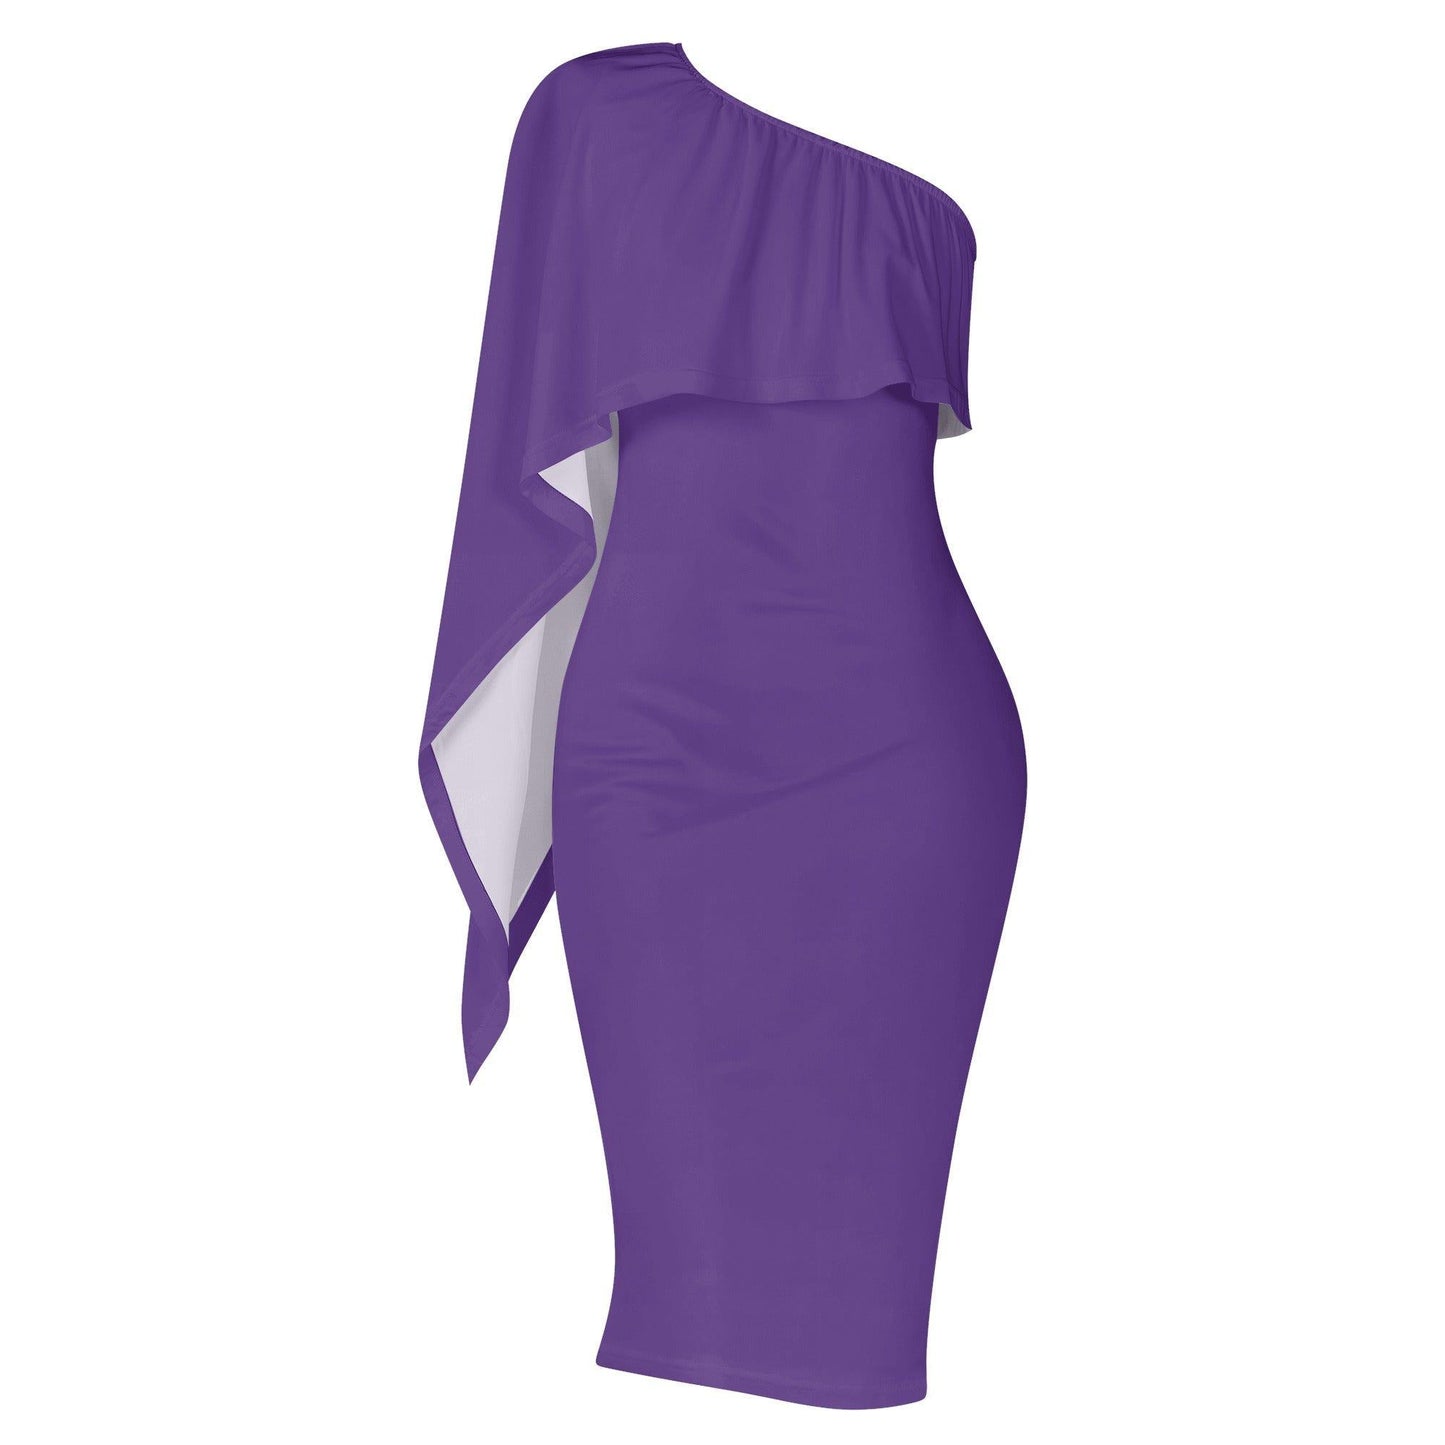 Lila Long Sleeve One Shoulder Dress -- Lila Long Sleeve One Shoulder Dress - undefined Long Sleeve One Shoulder Dress | JLR Design